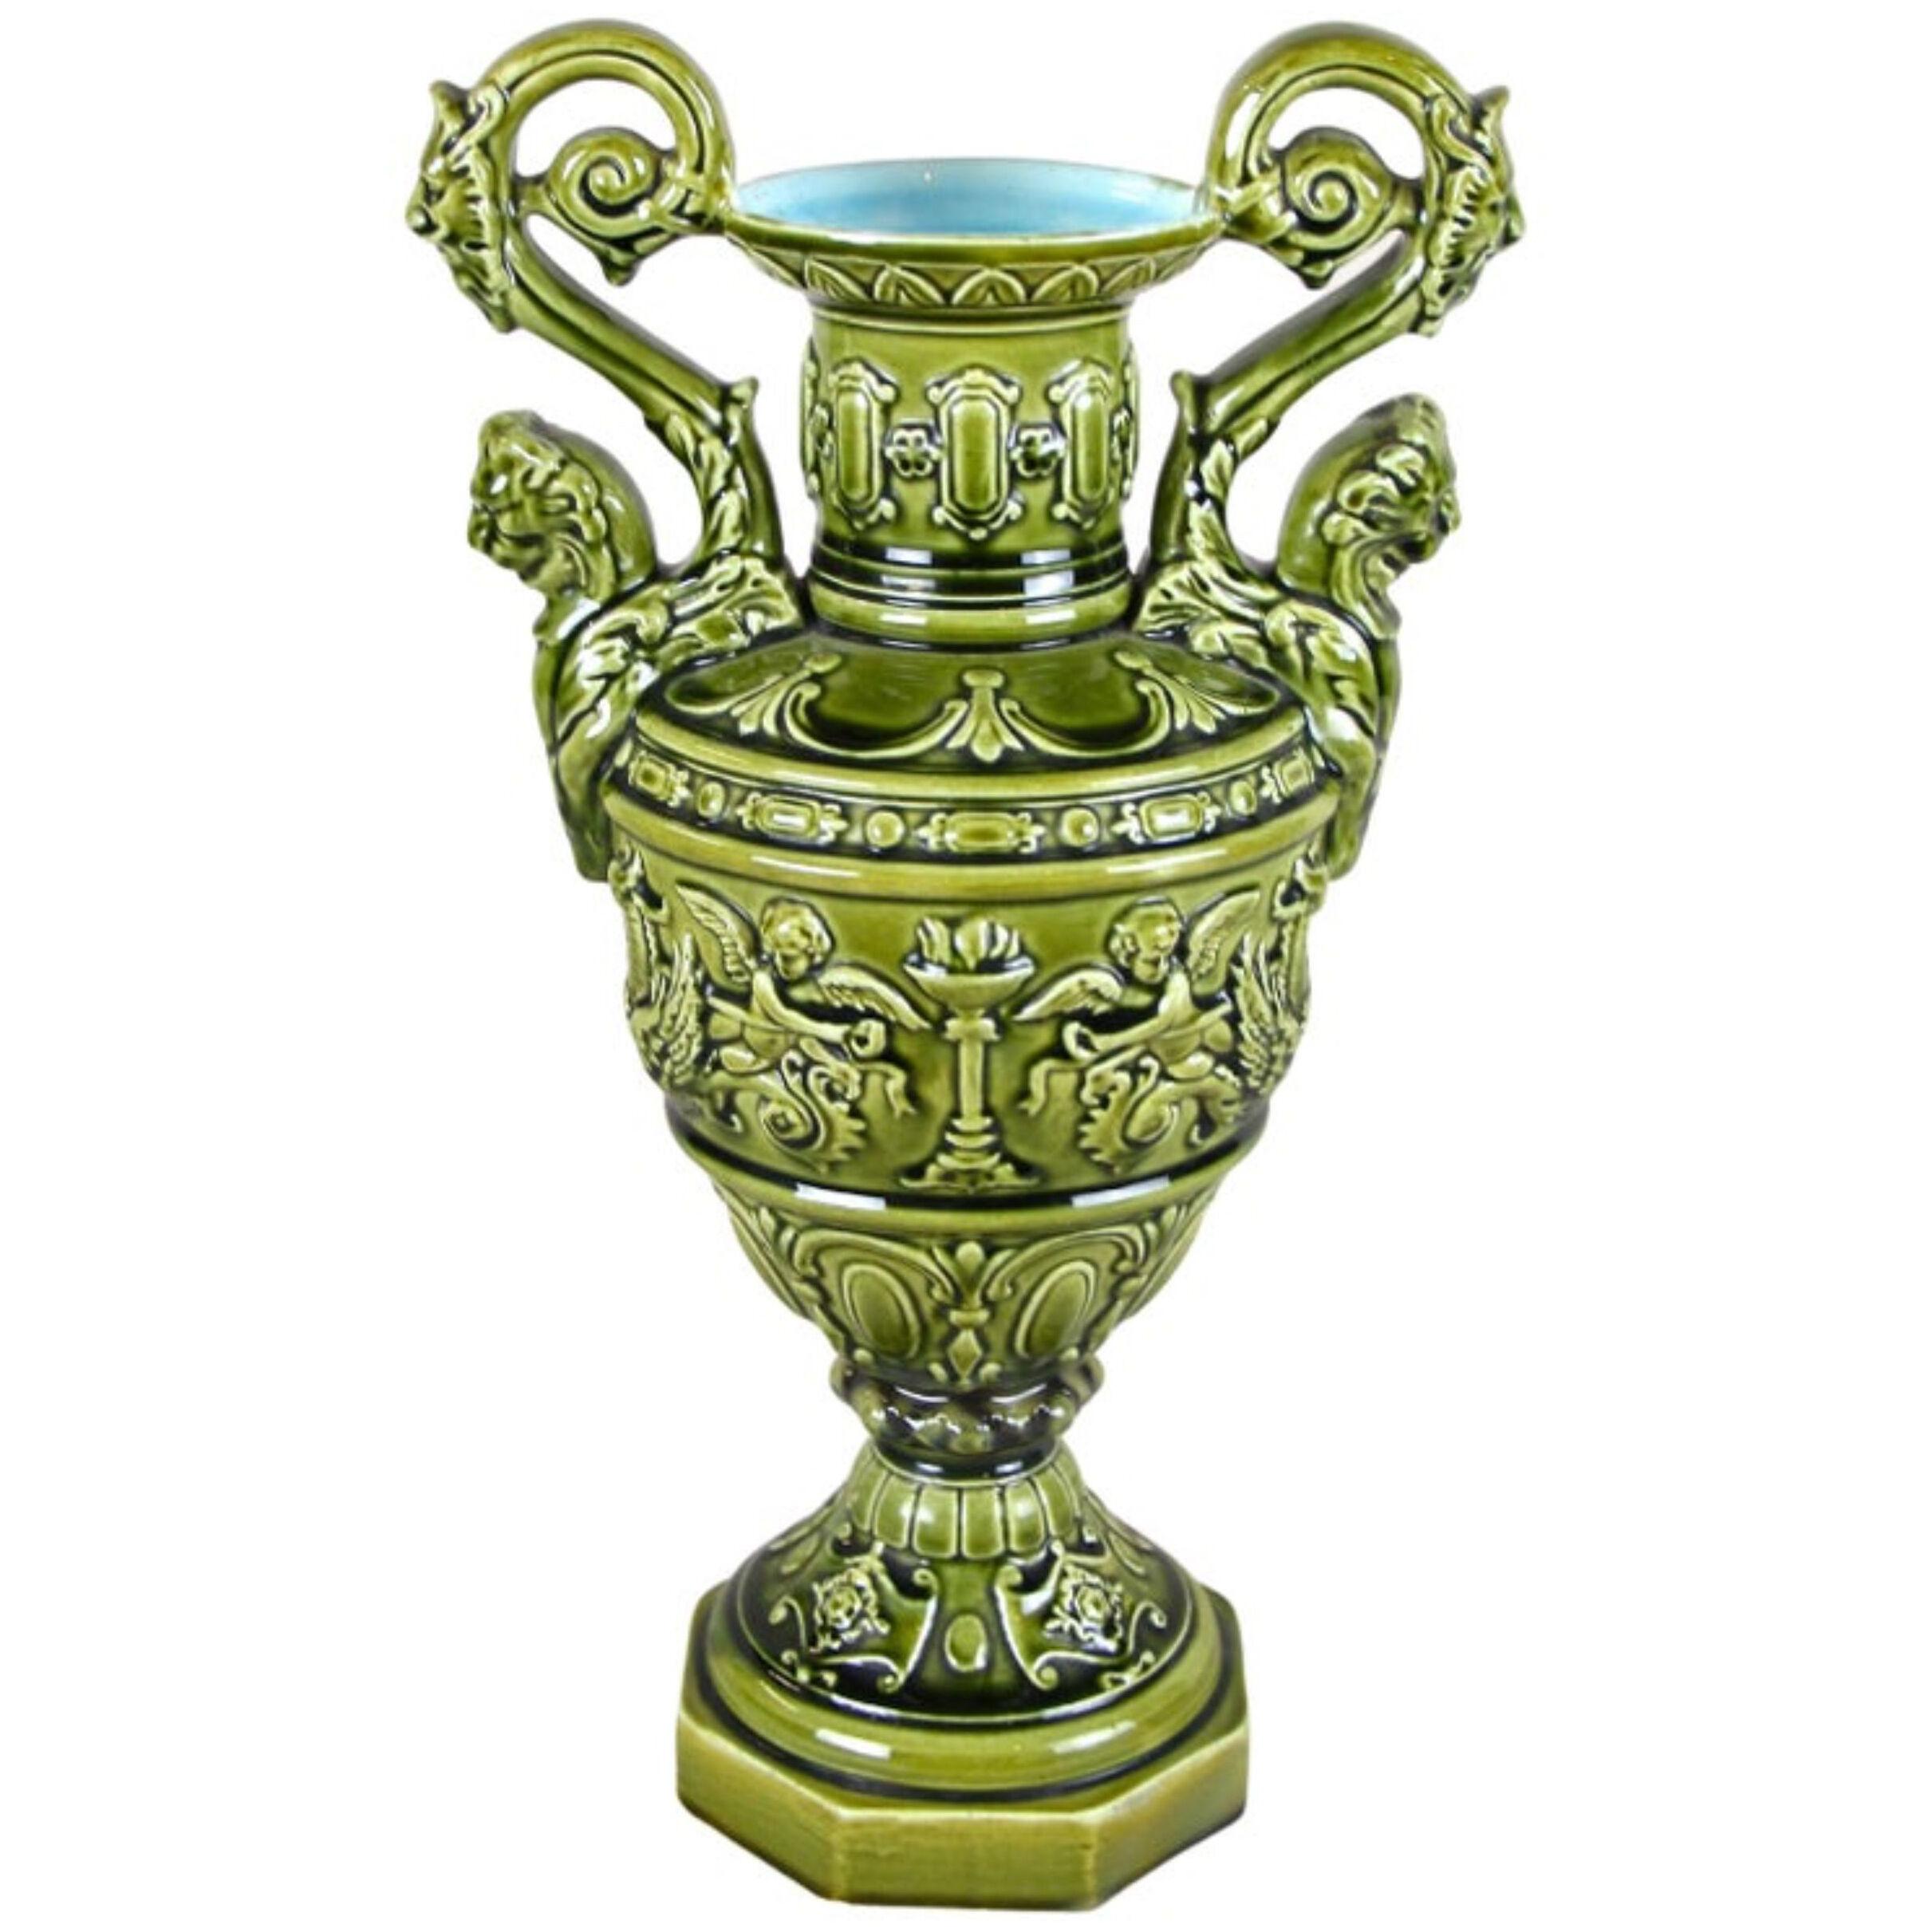 Art Nouveau Majolica Amphora Vase by Schuetz Cilli, circa 1900